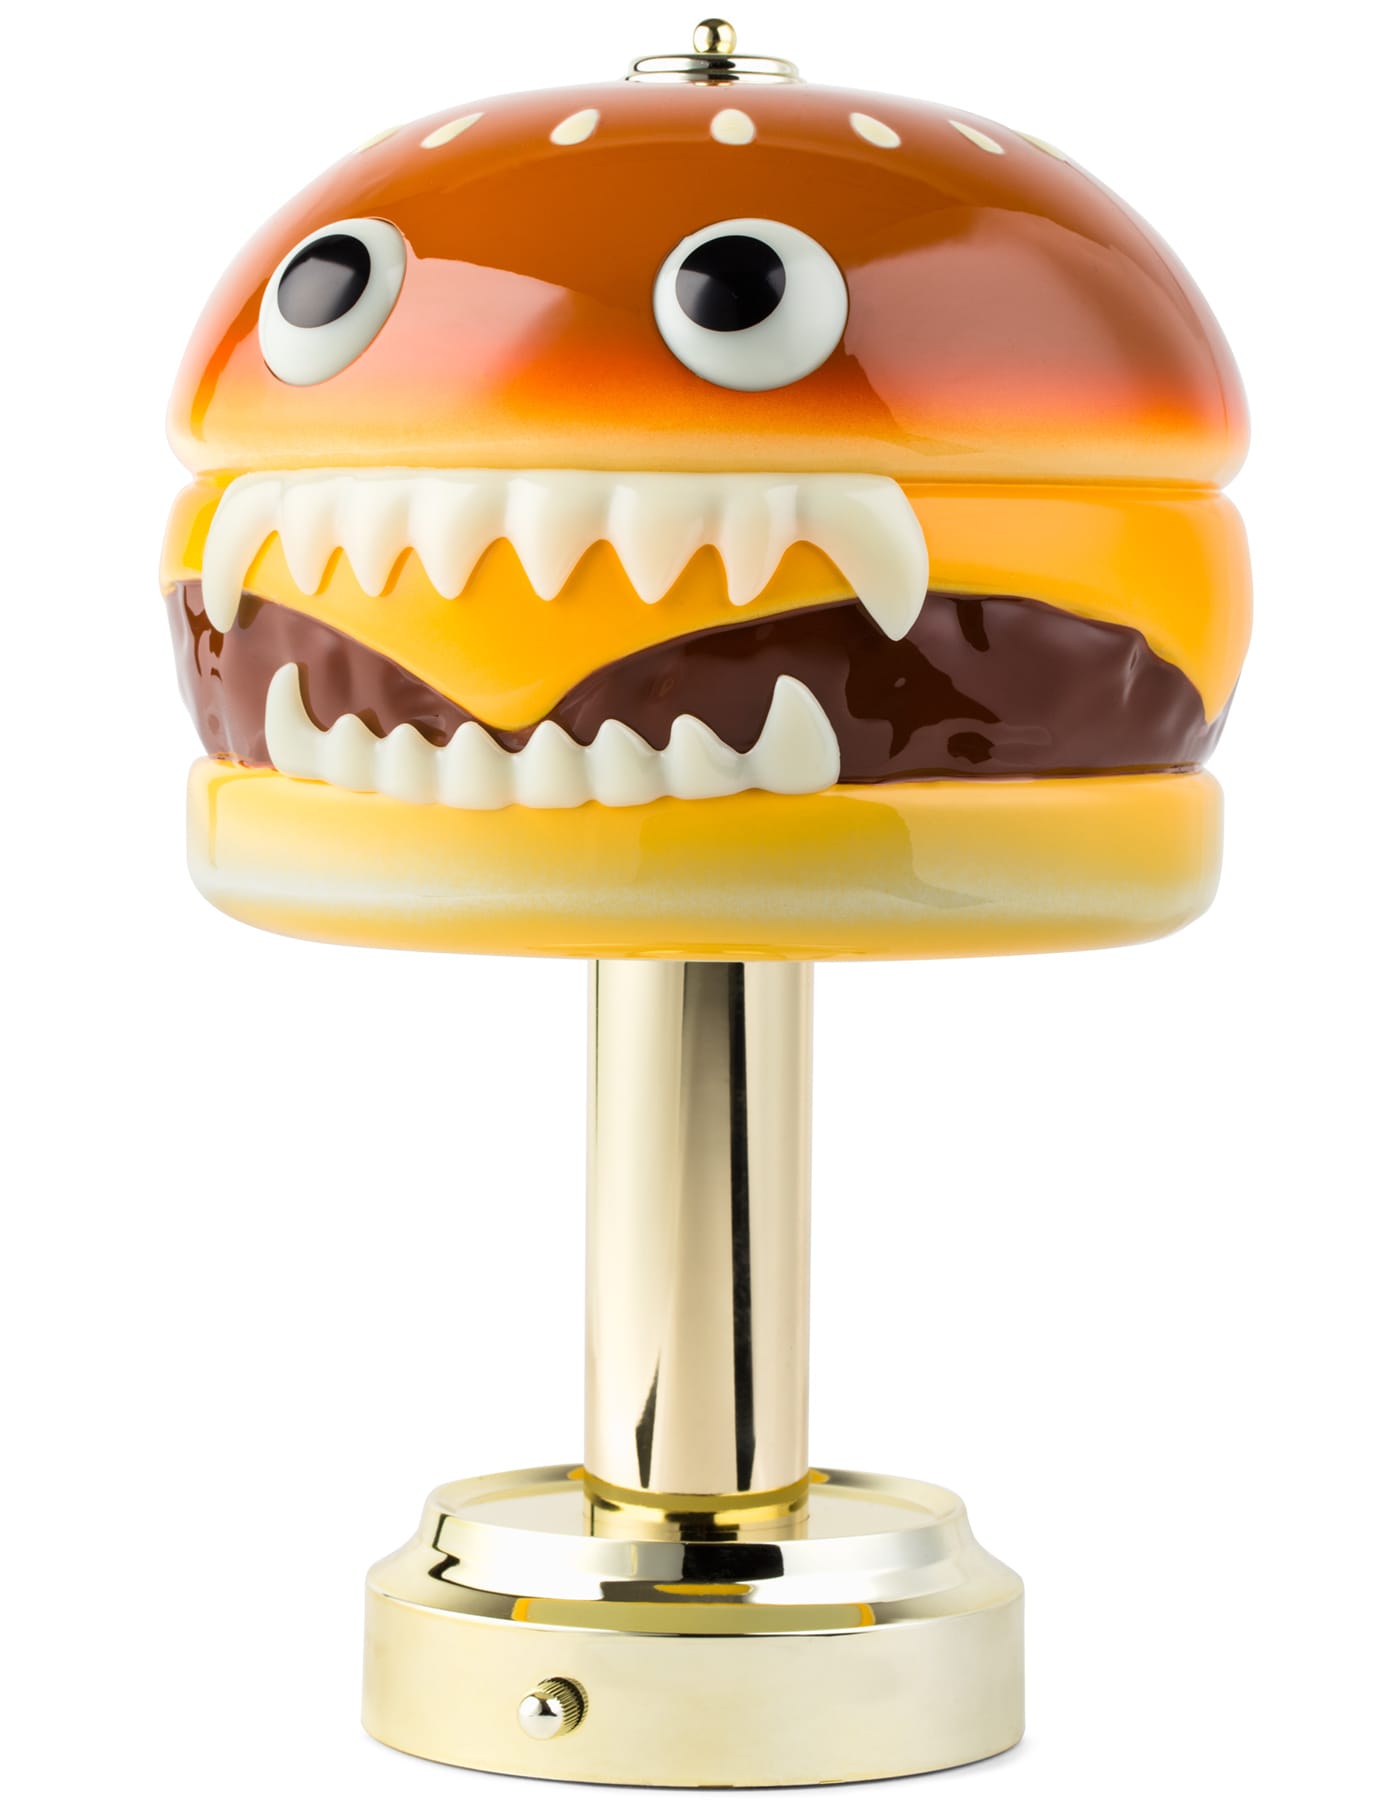 Undercover X Medicom Toy   Undercover X Medicom Toy Hamburger Lamp